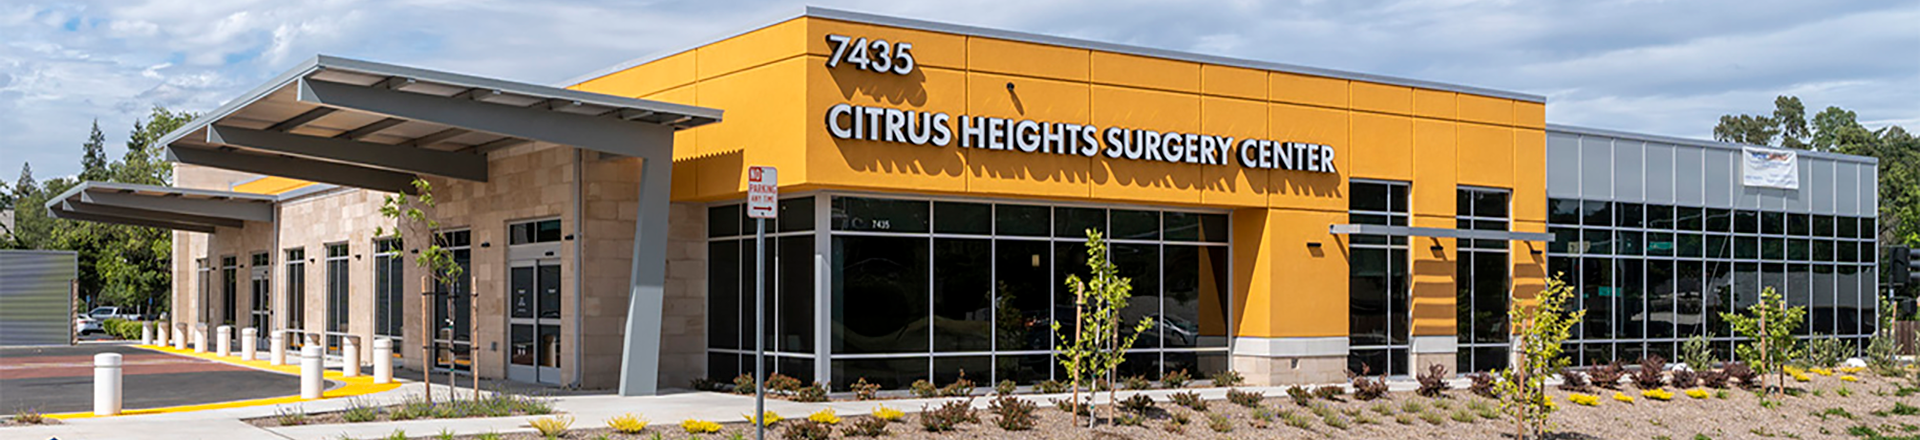 Citrus Heights Surgery Center